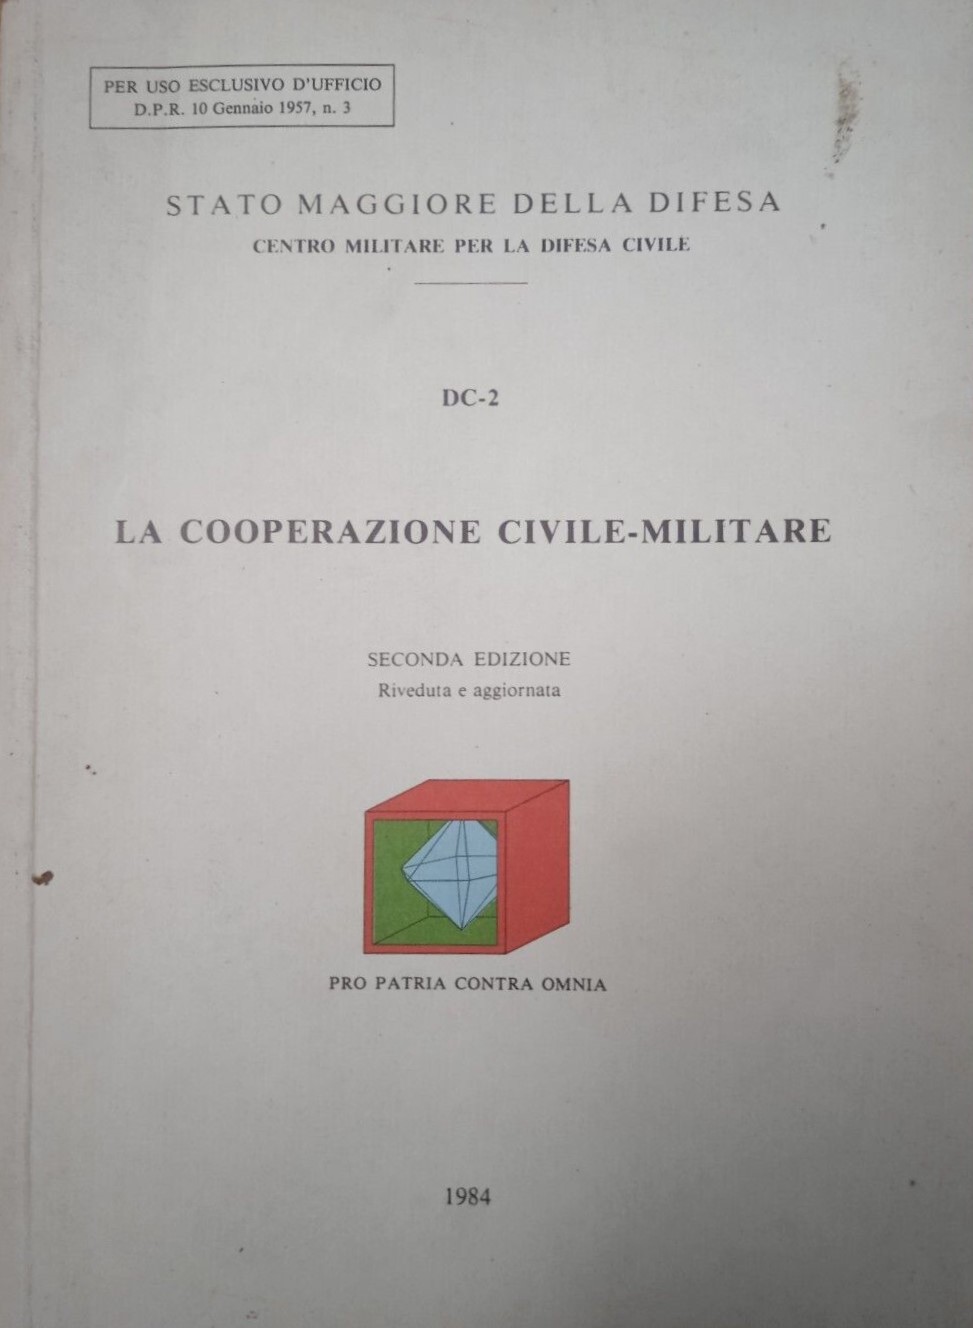 “La cooperazione civile-militare” (1984) del Centro Militare per la Difesa Civile